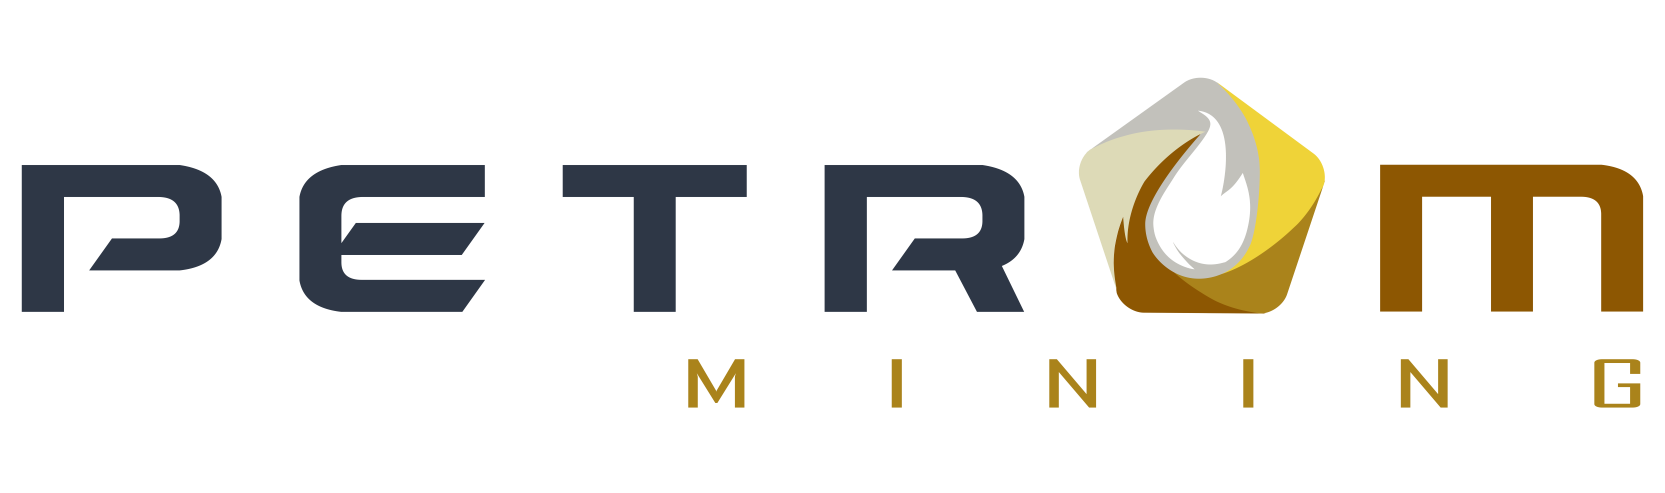 PetroM Mining | International Mining Solutions